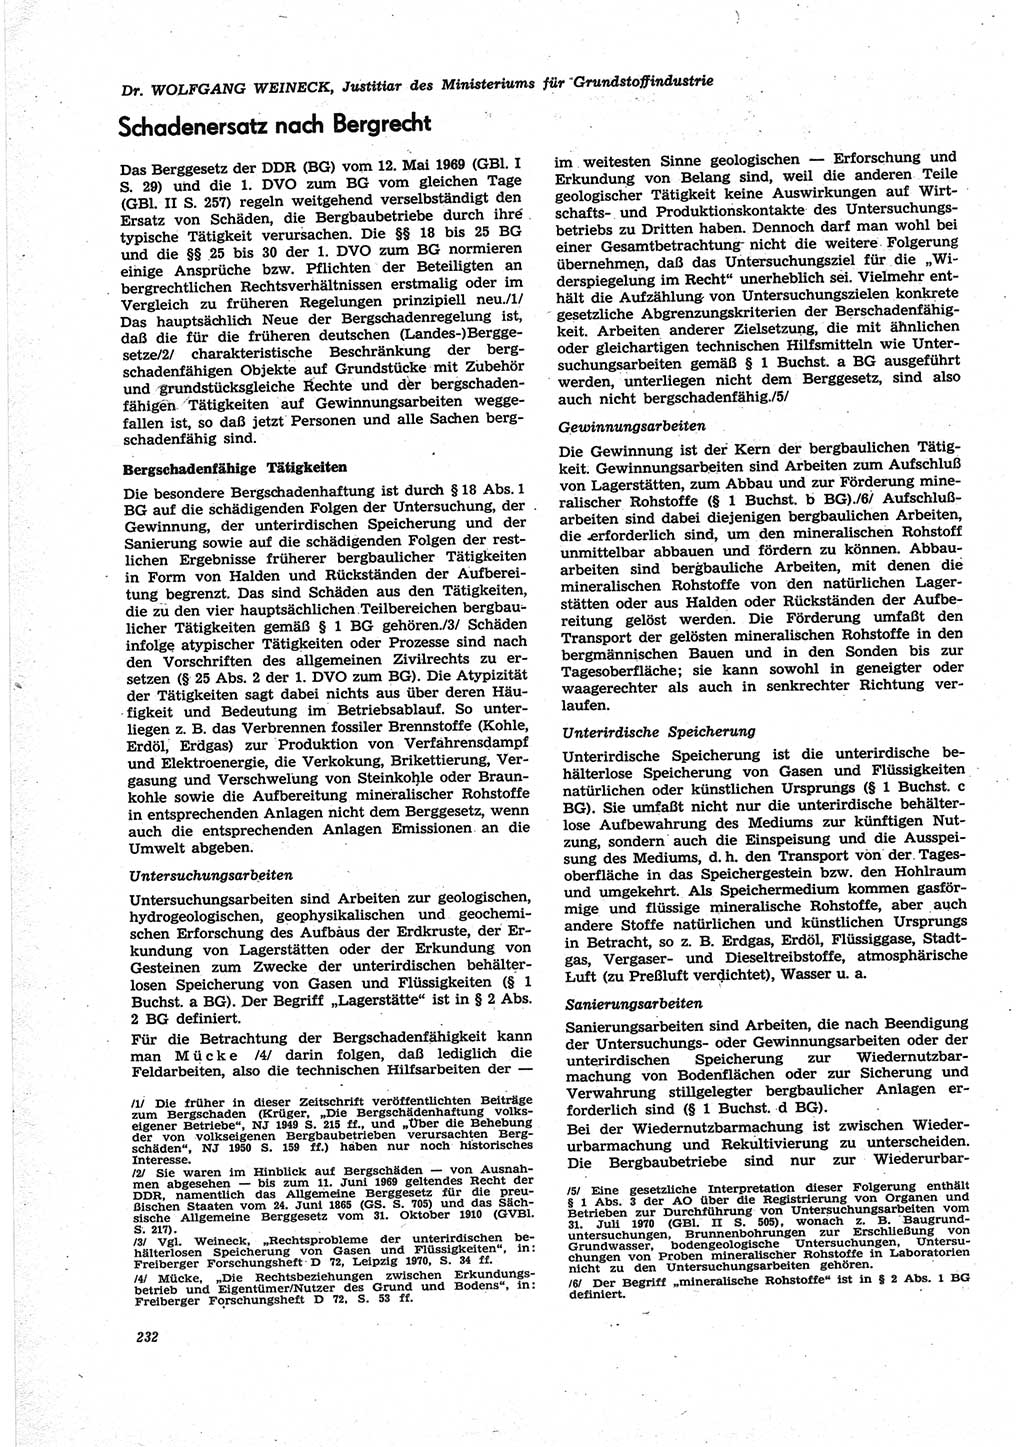 Neue Justiz (NJ), Zeitschrift für Recht und Rechtswissenschaft [Deutsche Demokratische Republik (DDR)], 25. Jahrgang 1971, Seite 232 (NJ DDR 1971, S. 232)